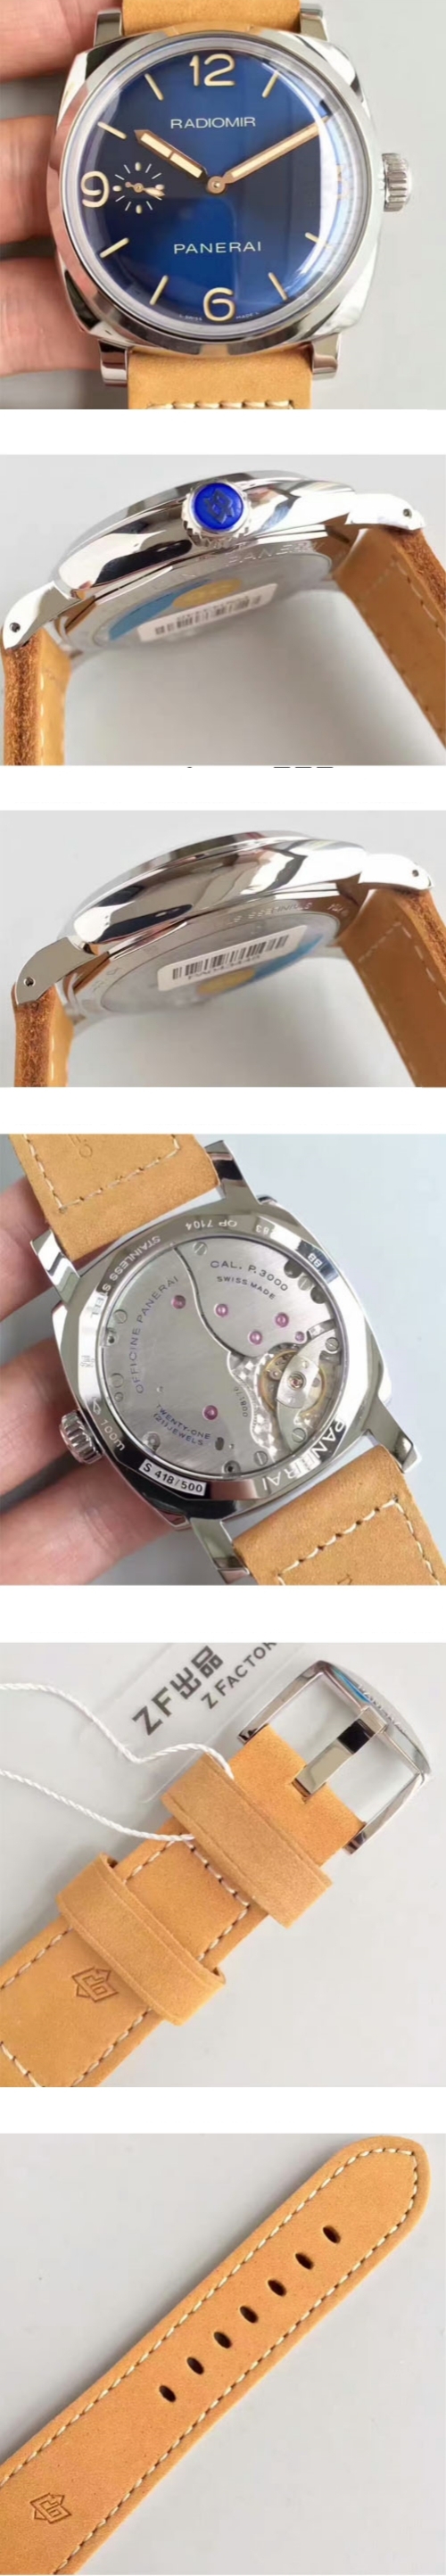 パネライ腕時計の説明